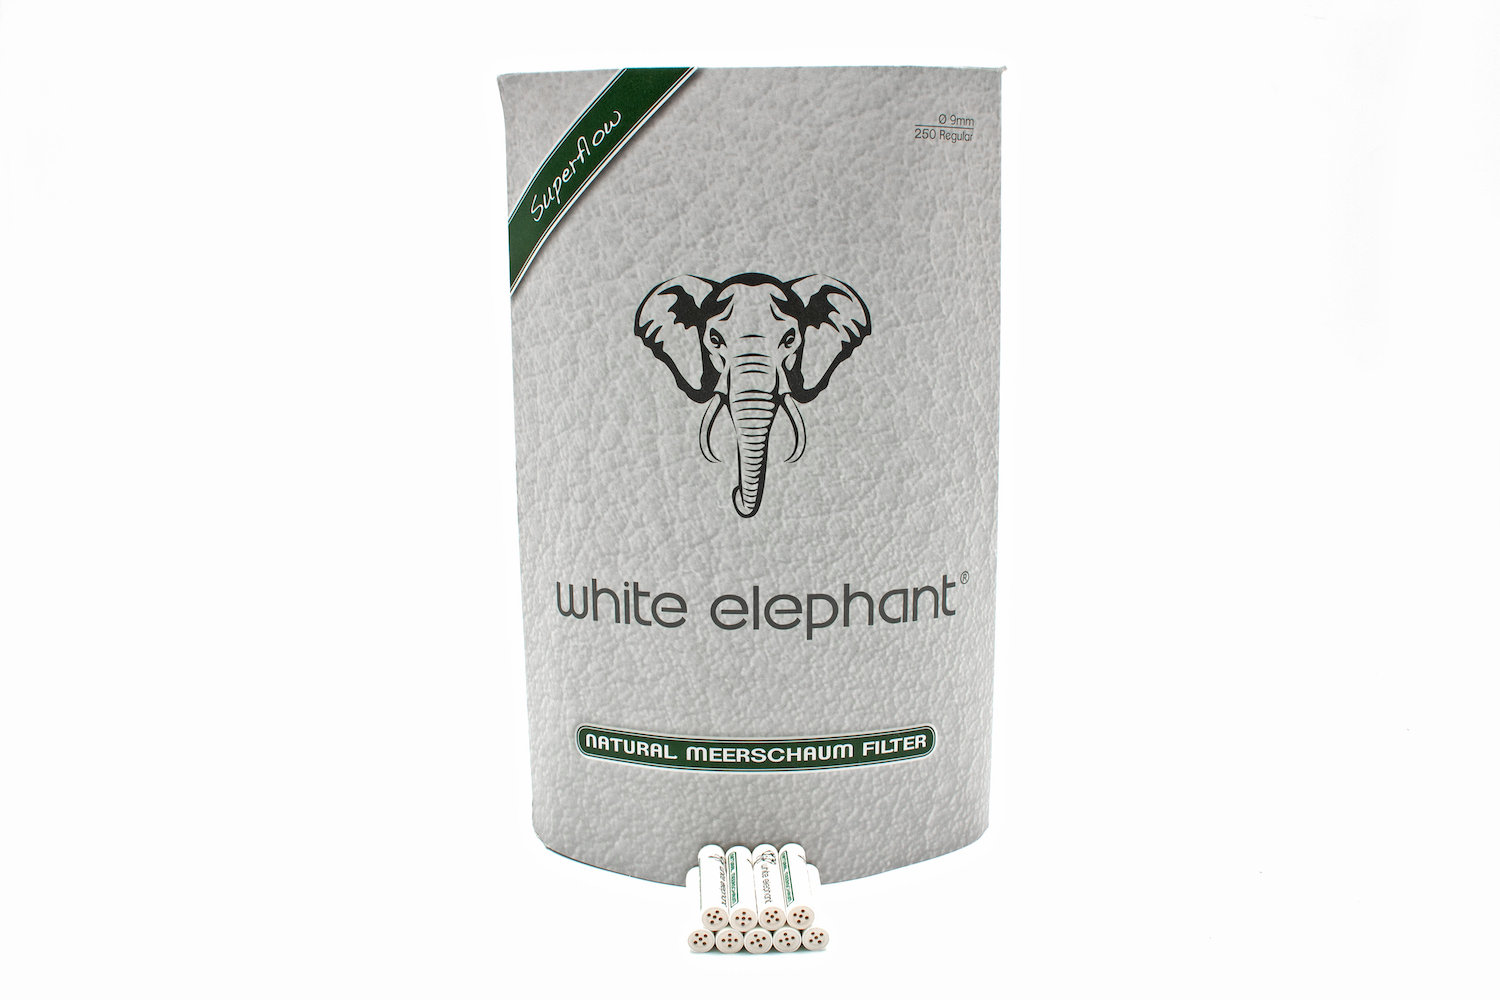 White Elephant 250 Natural Meerschaum Filter 9mm Jumbo (10x)